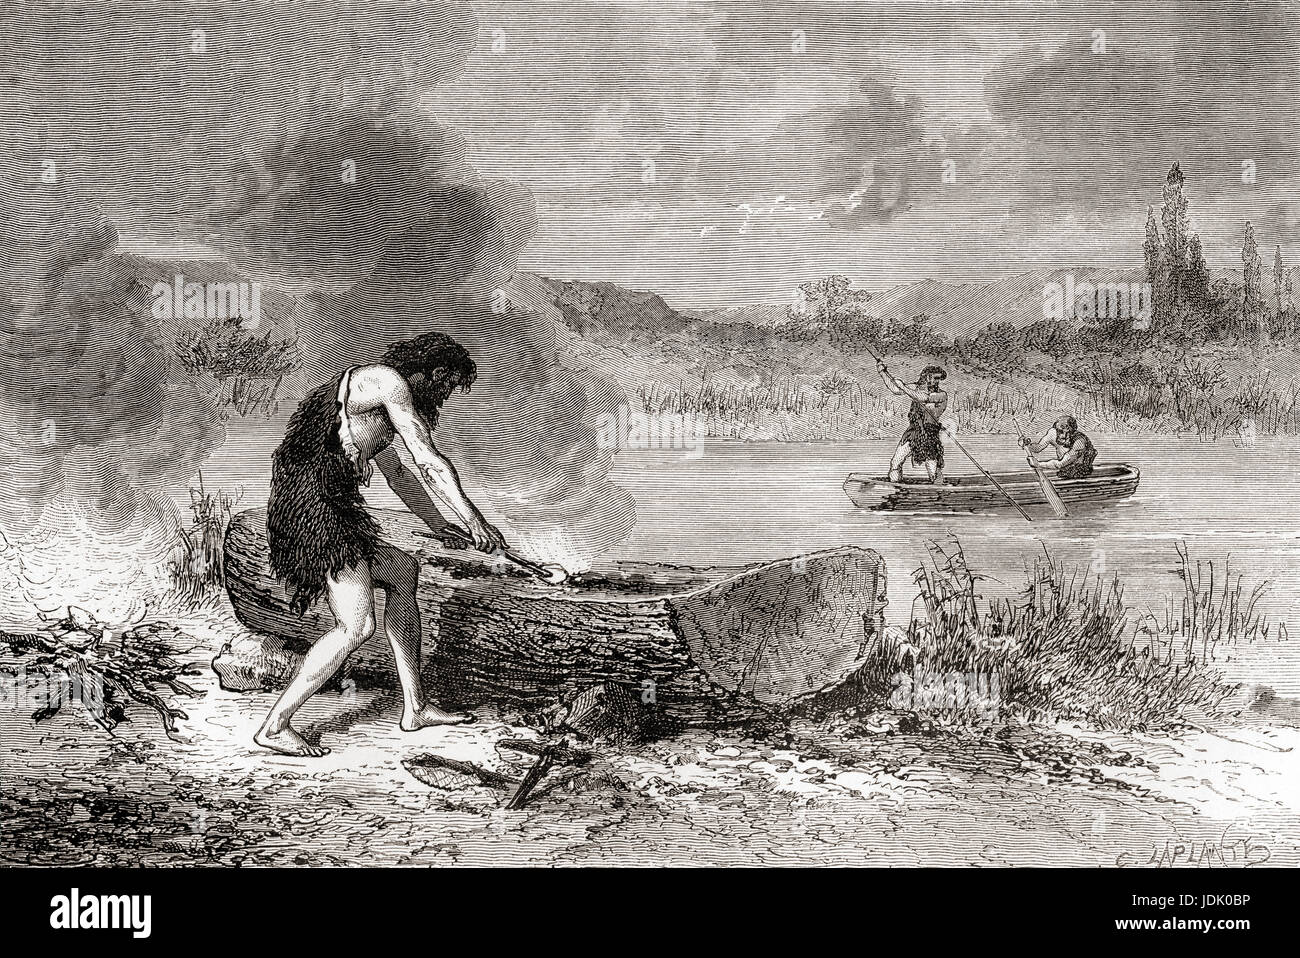 Los primeros navegantes durante el Neolítico aka Nueva Edad de Piedra o edad de la piedra pulida. A partir de l'Homme Primitif, publicado el 1870. Foto de stock